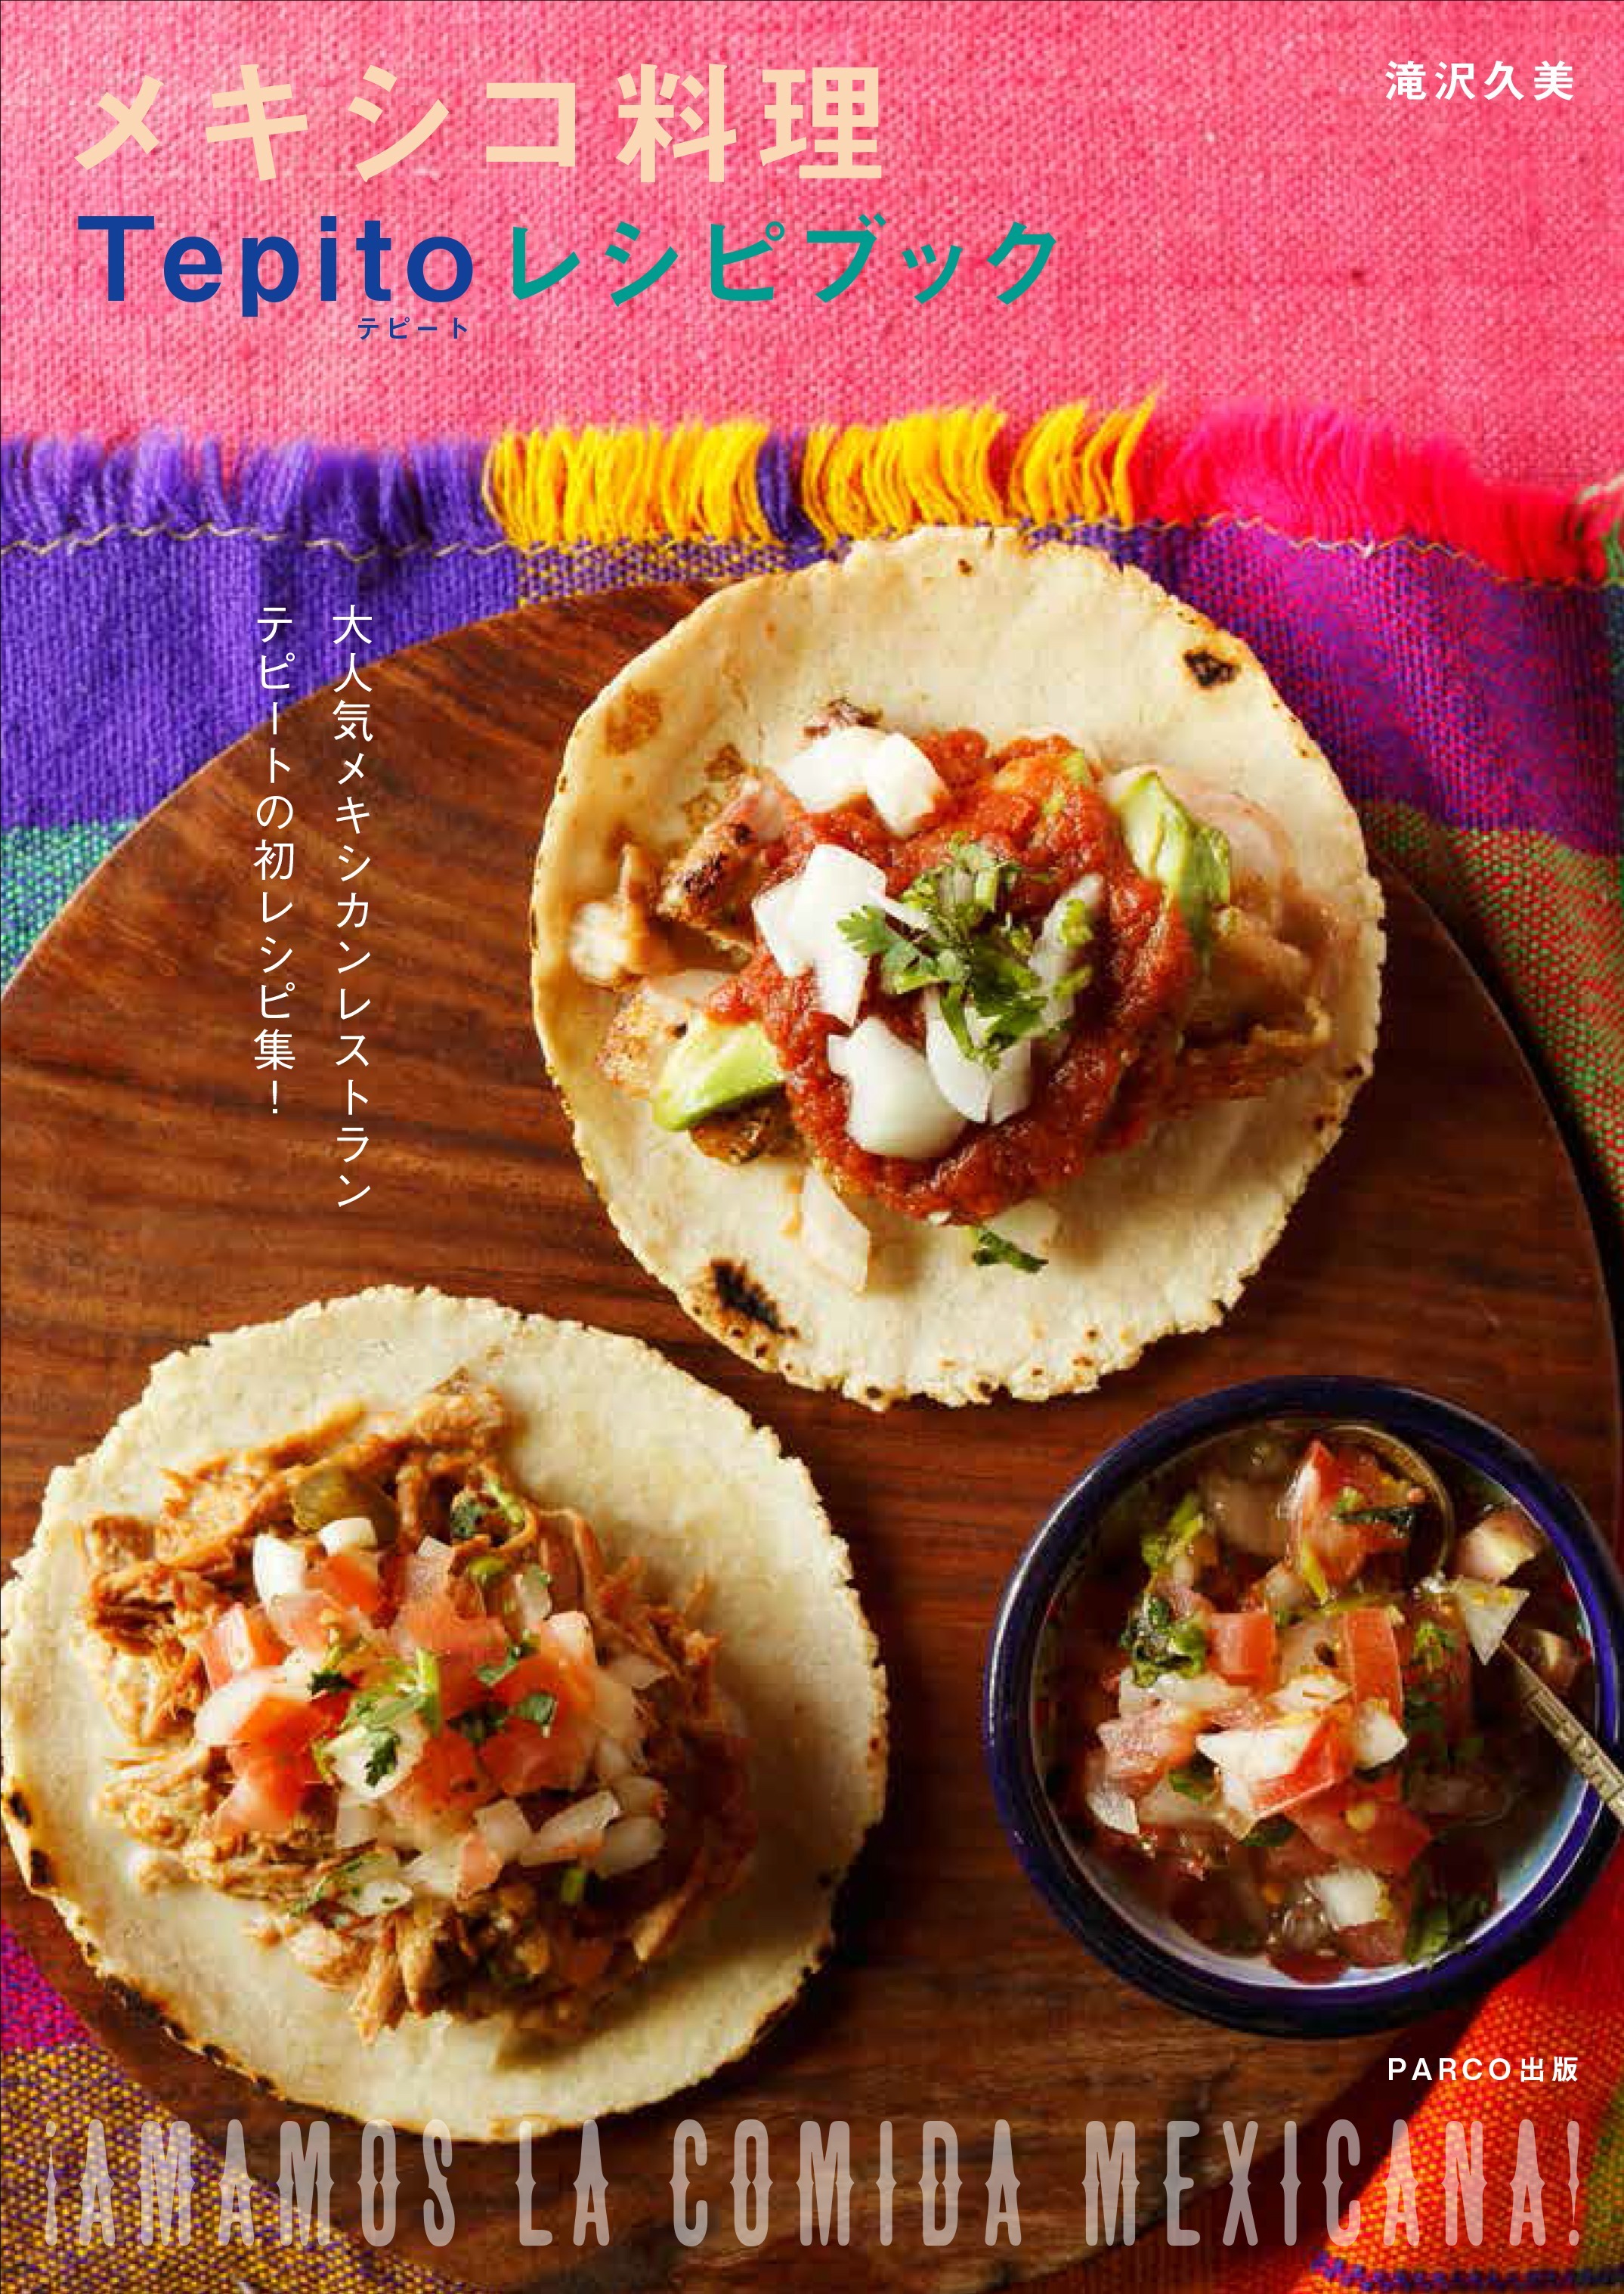 新刊 ご家庭でも本格メキシコ料理を メキシカンレストラン Tepito 初のレシピ集 メキシコ料理 Tepito レシピブック 7月27日刊行 Parco出版のプレスリリース